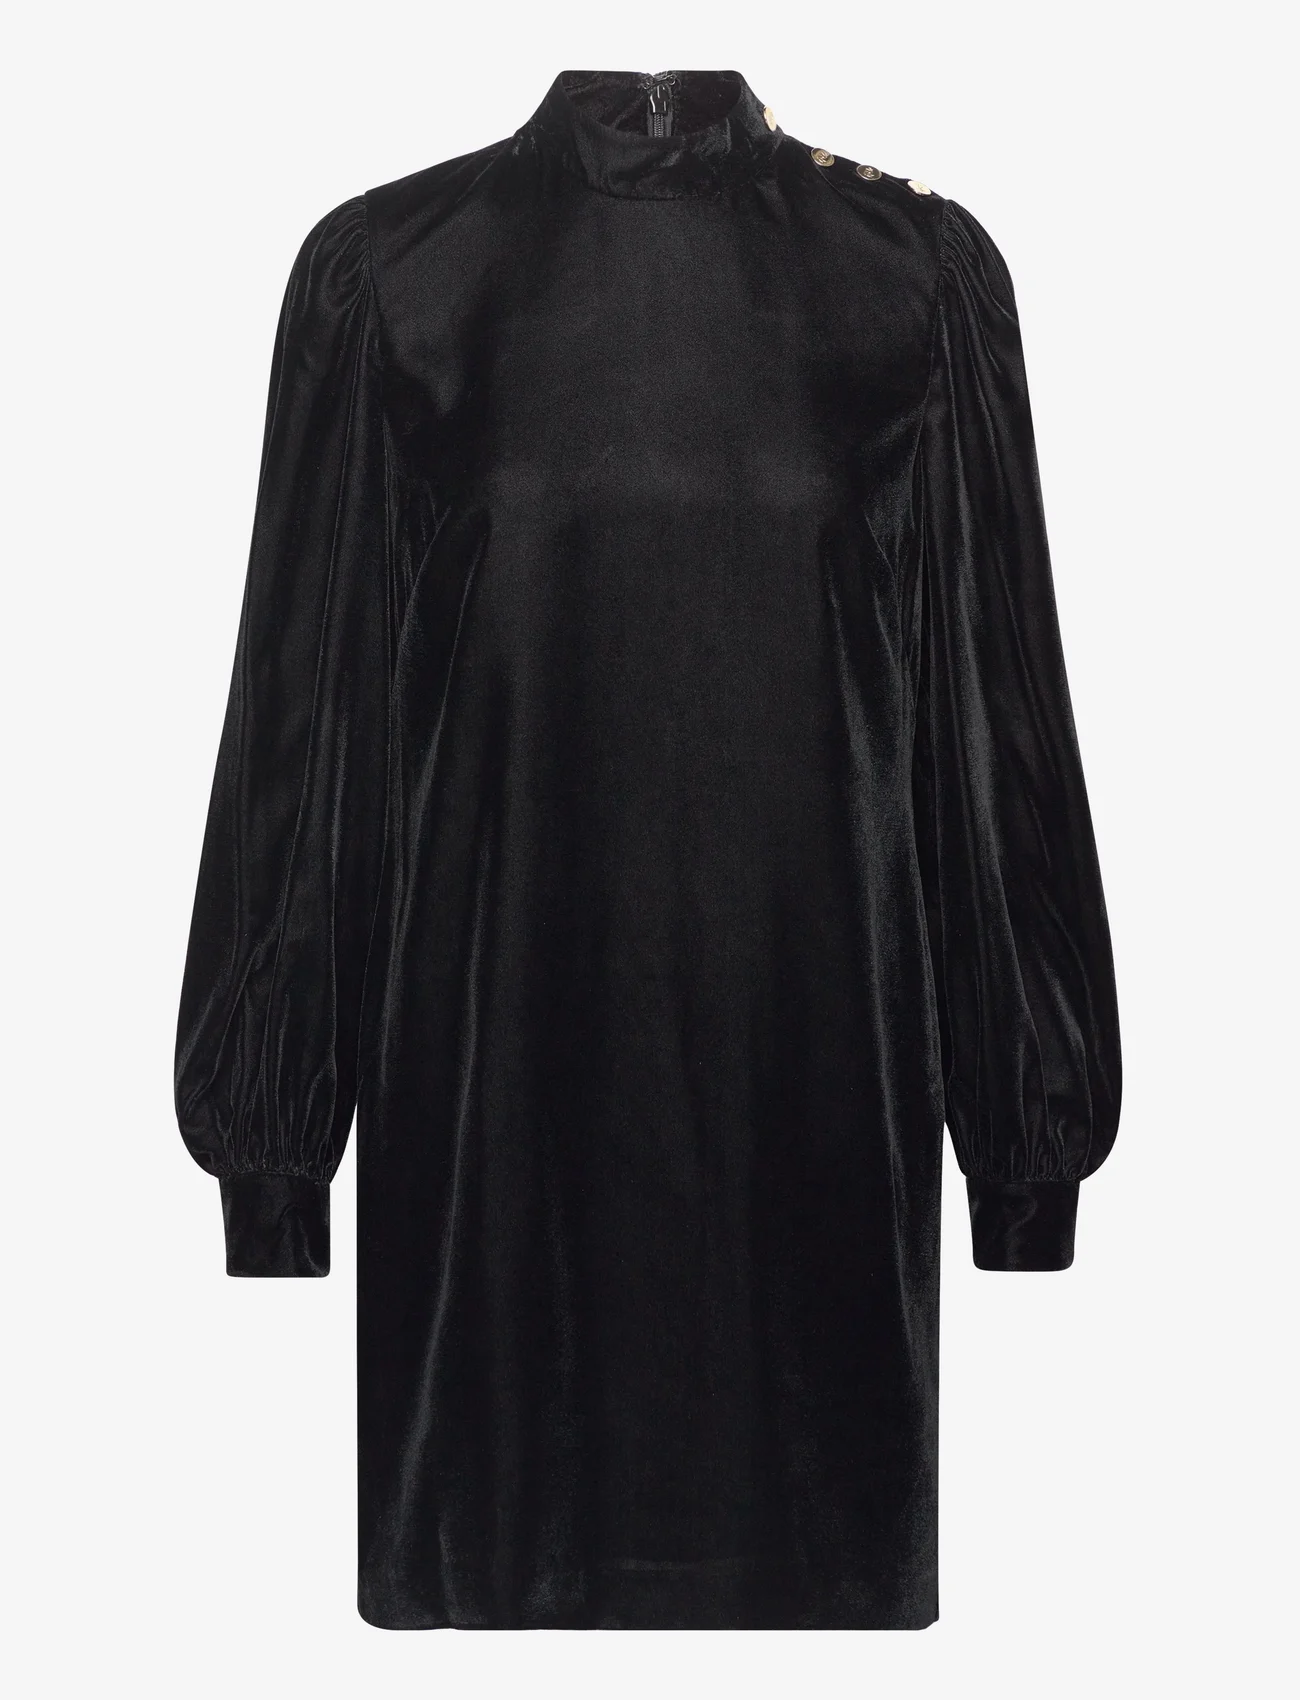 Lauren Ralph Lauren - Button-Trim Velvet Mockneck Dress - Īsas kleitas - black velvet - 0